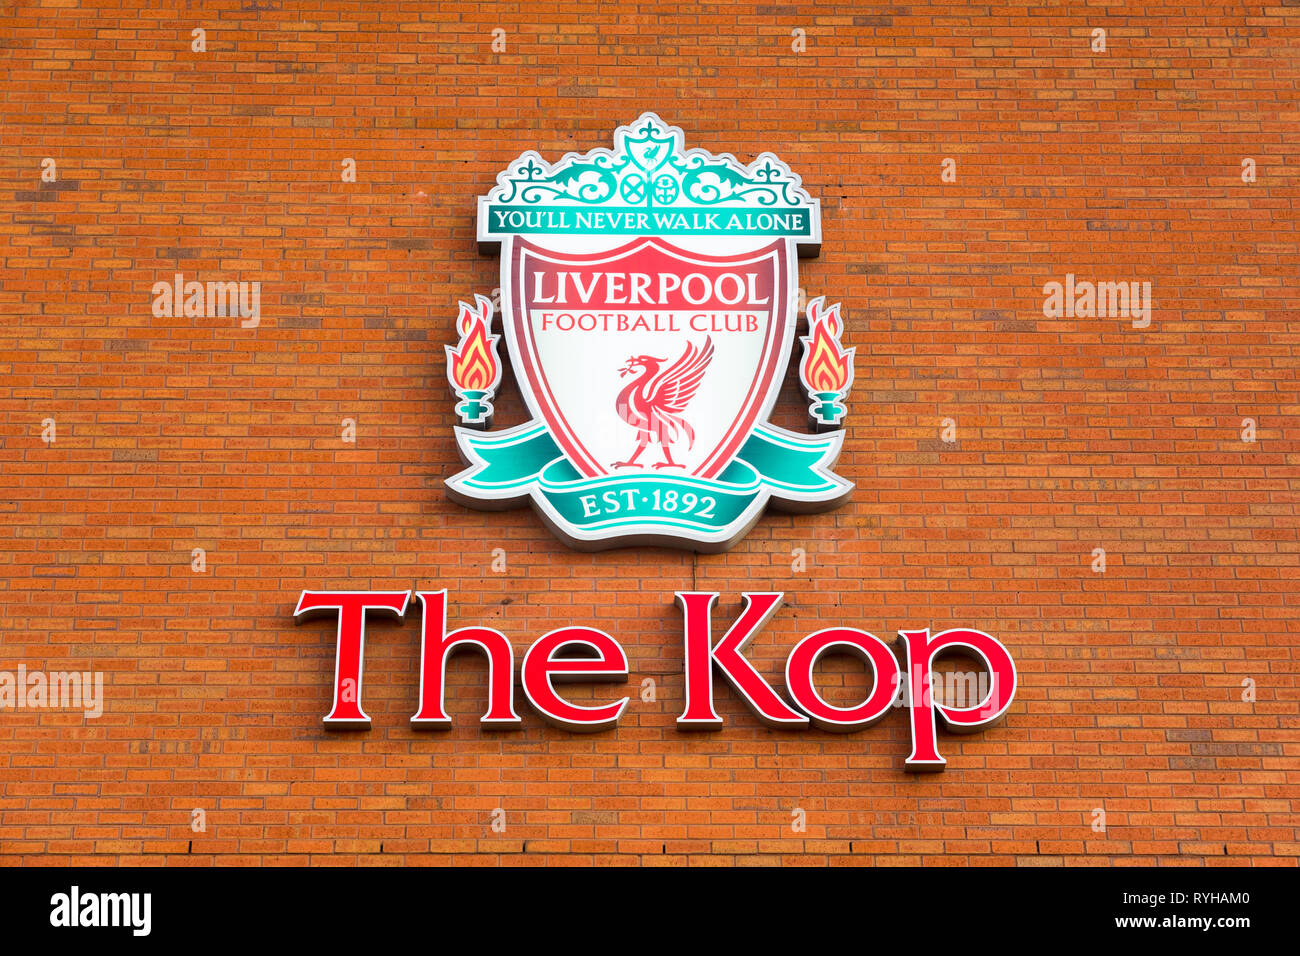 Große rote grüne Liverpool Football Club The Kop logo Abzeichen emblem Zeichen auf externe Brick Wall von Anfield Road Stadium mit Walton Breck Straße montiert Stockfoto